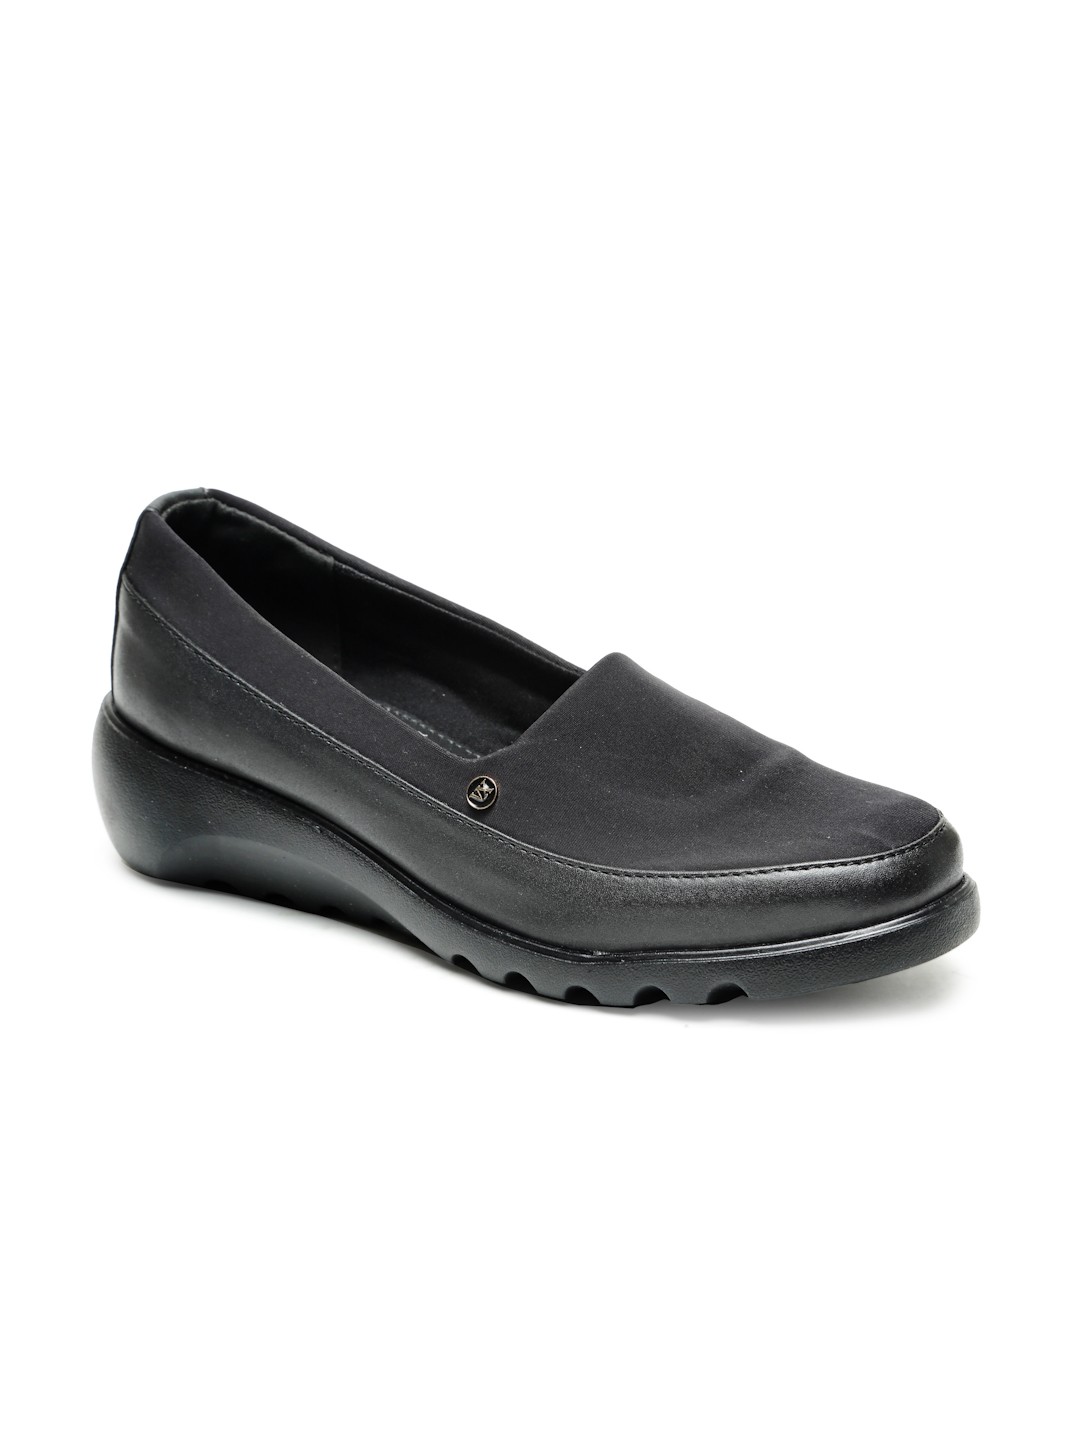 Buy Von Wellx Germany Comfort Women's Black Casual Shoes Elsa Online in Bhubaneswar